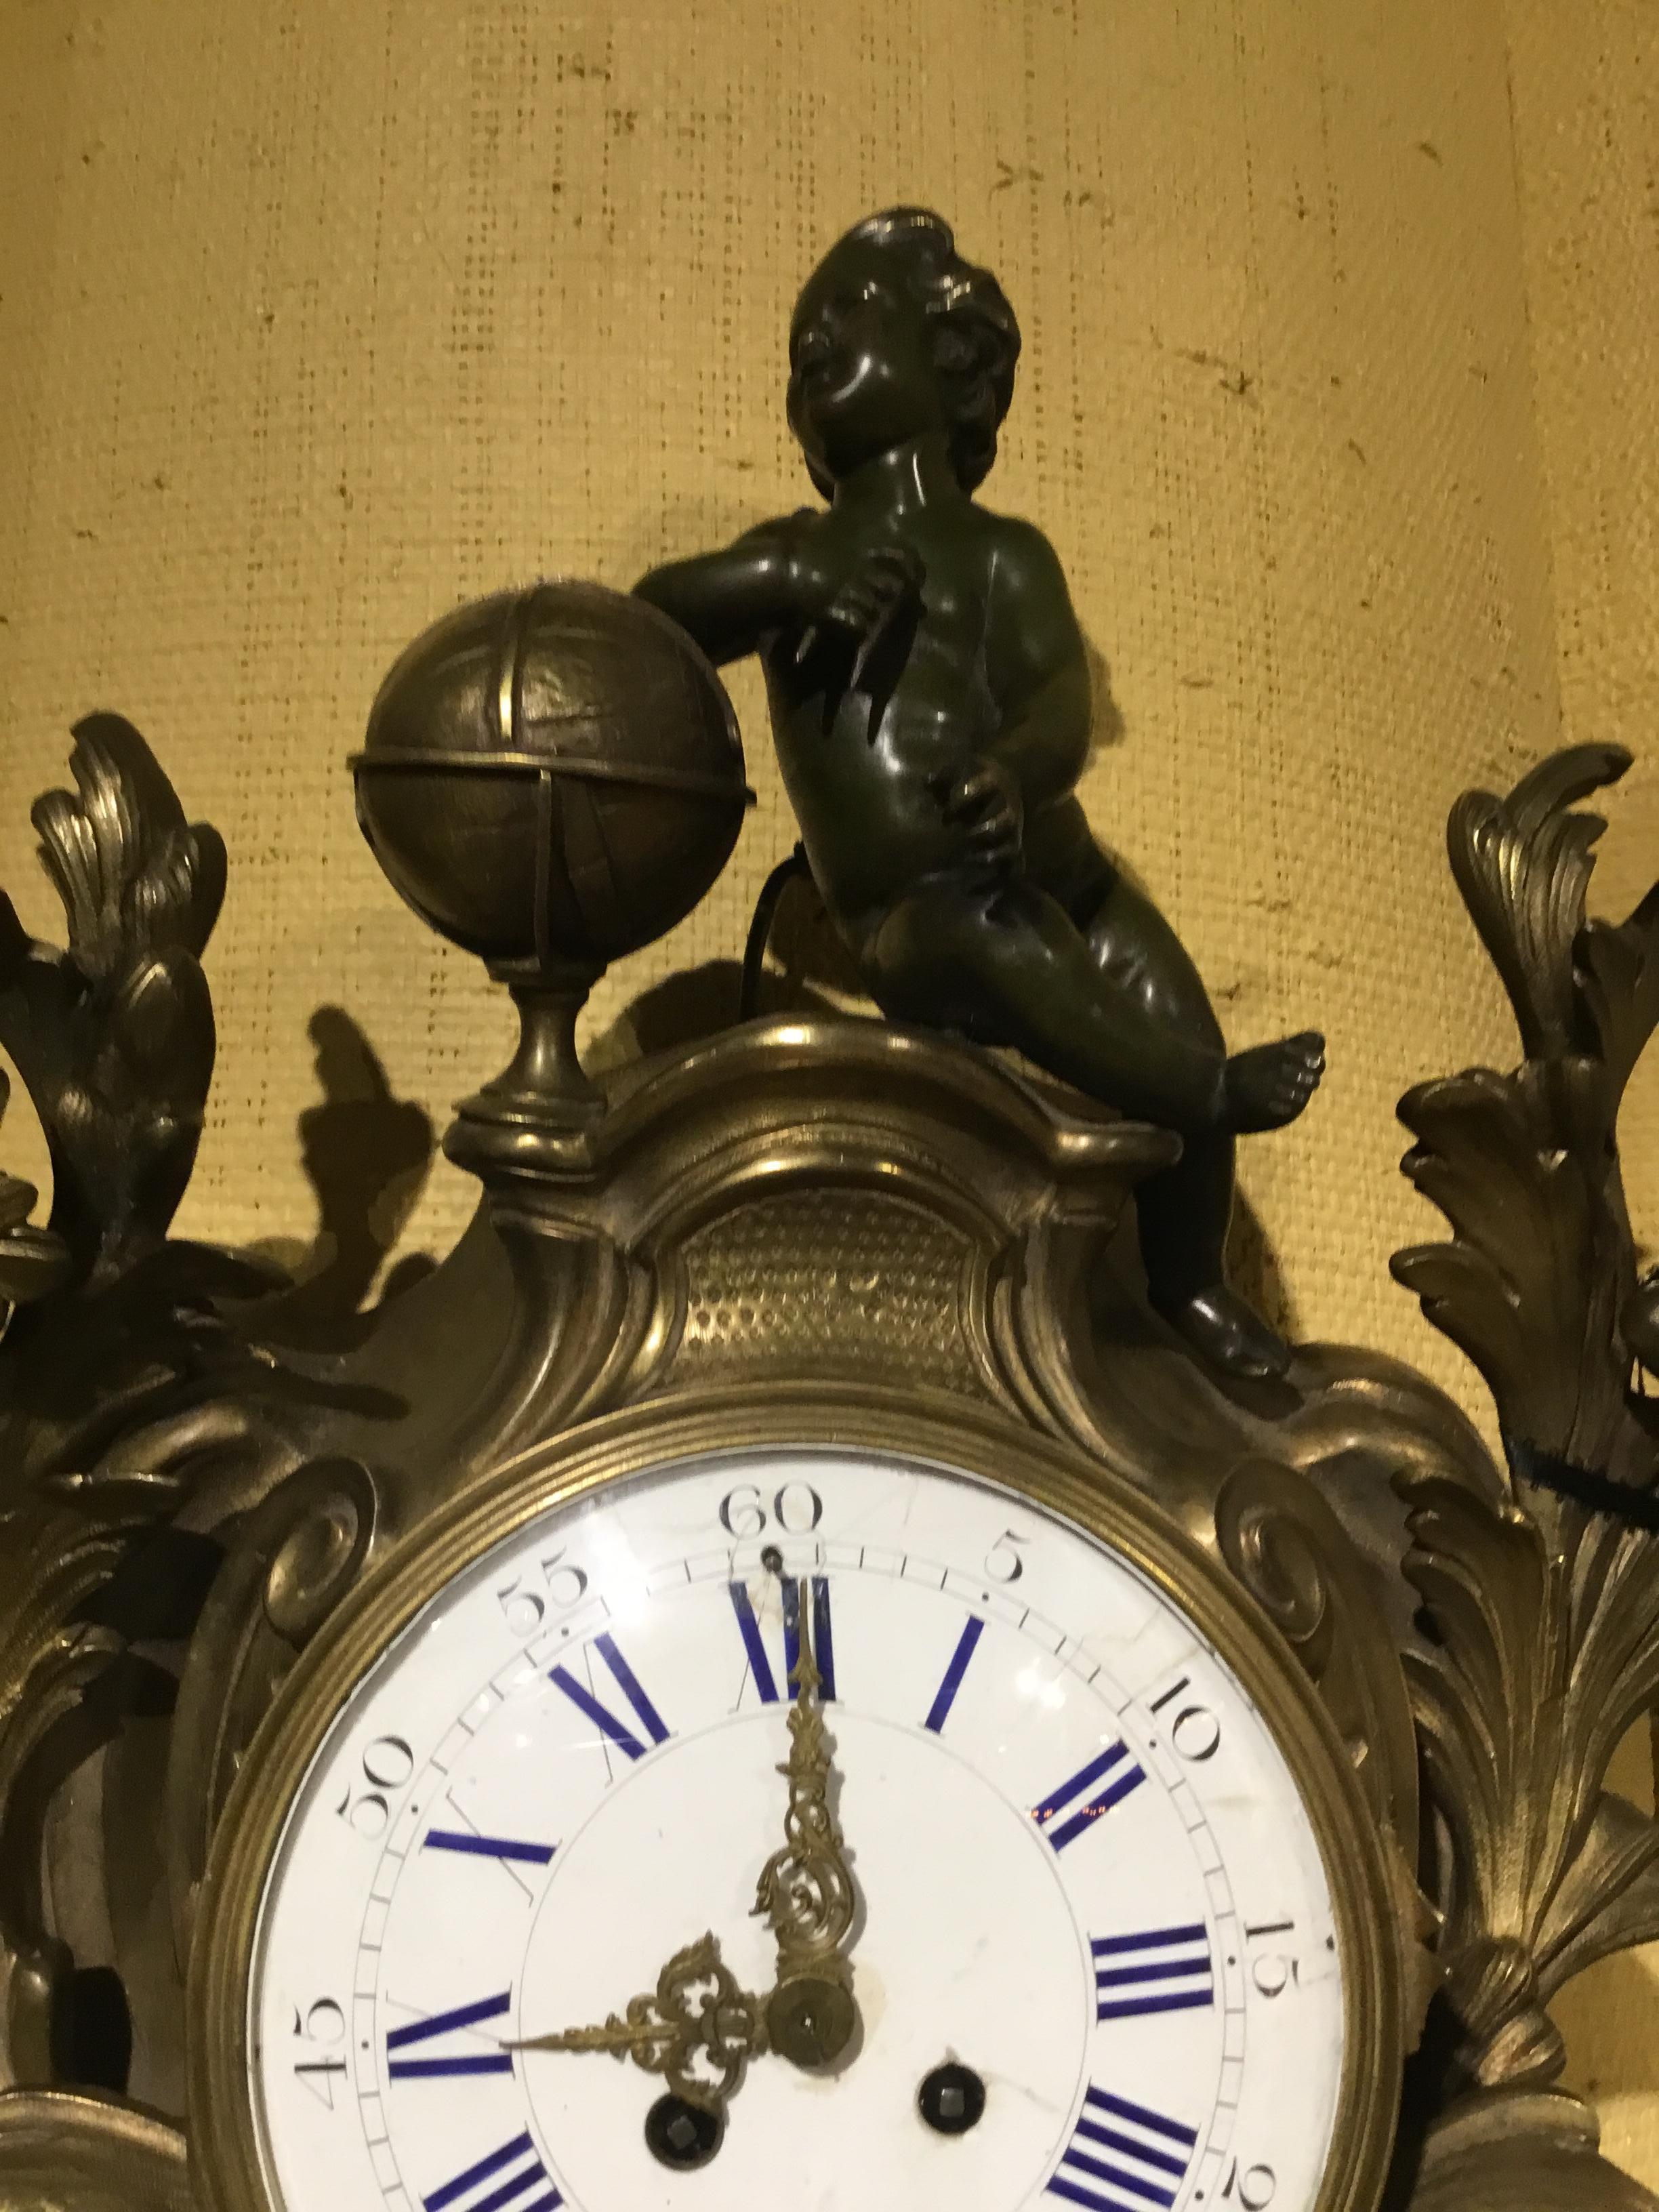 Große Kartelluhr aus Bronze mit einem patinierten Putto, der auf dem Scheitel dieser außergewöhnlichen Uhr sitzt.
Schnörkel und Blattwerk zieren die Seiten des runden Ziffernblatts, das aus weißem Holz gefertigt ist
Emaille mit blauen römischen